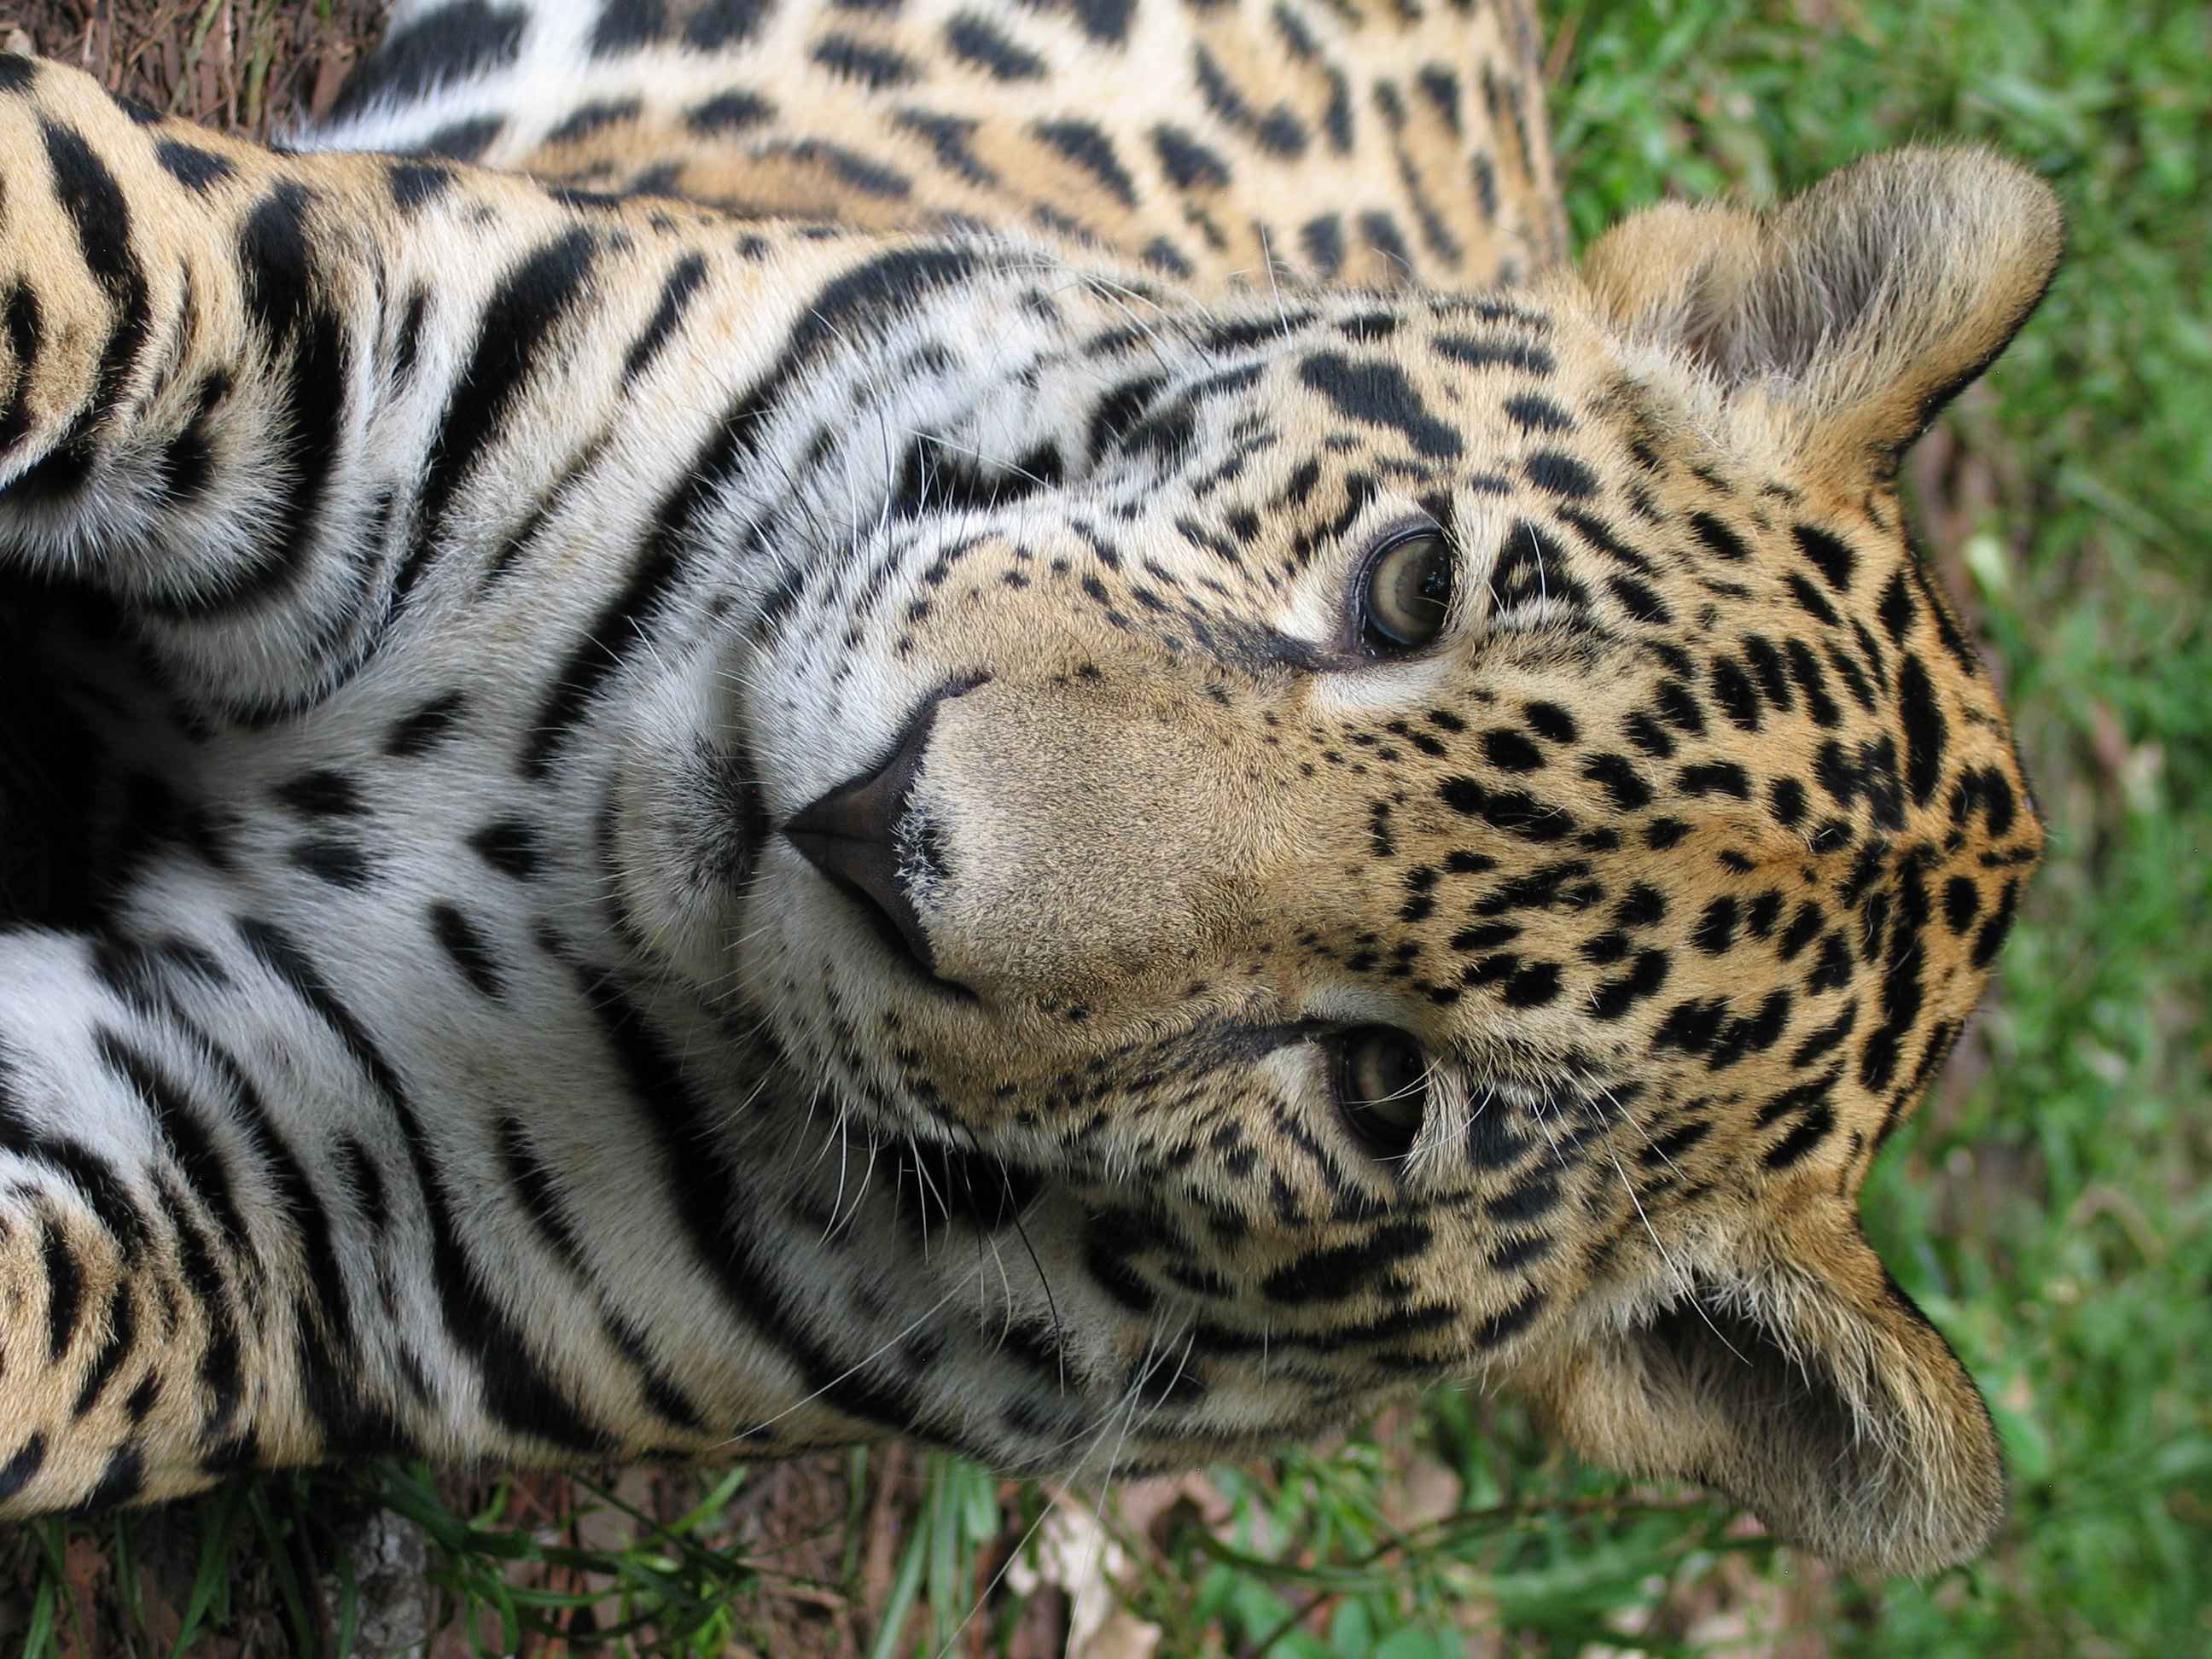 Junior the Jaguar - Belize City Zoo '07